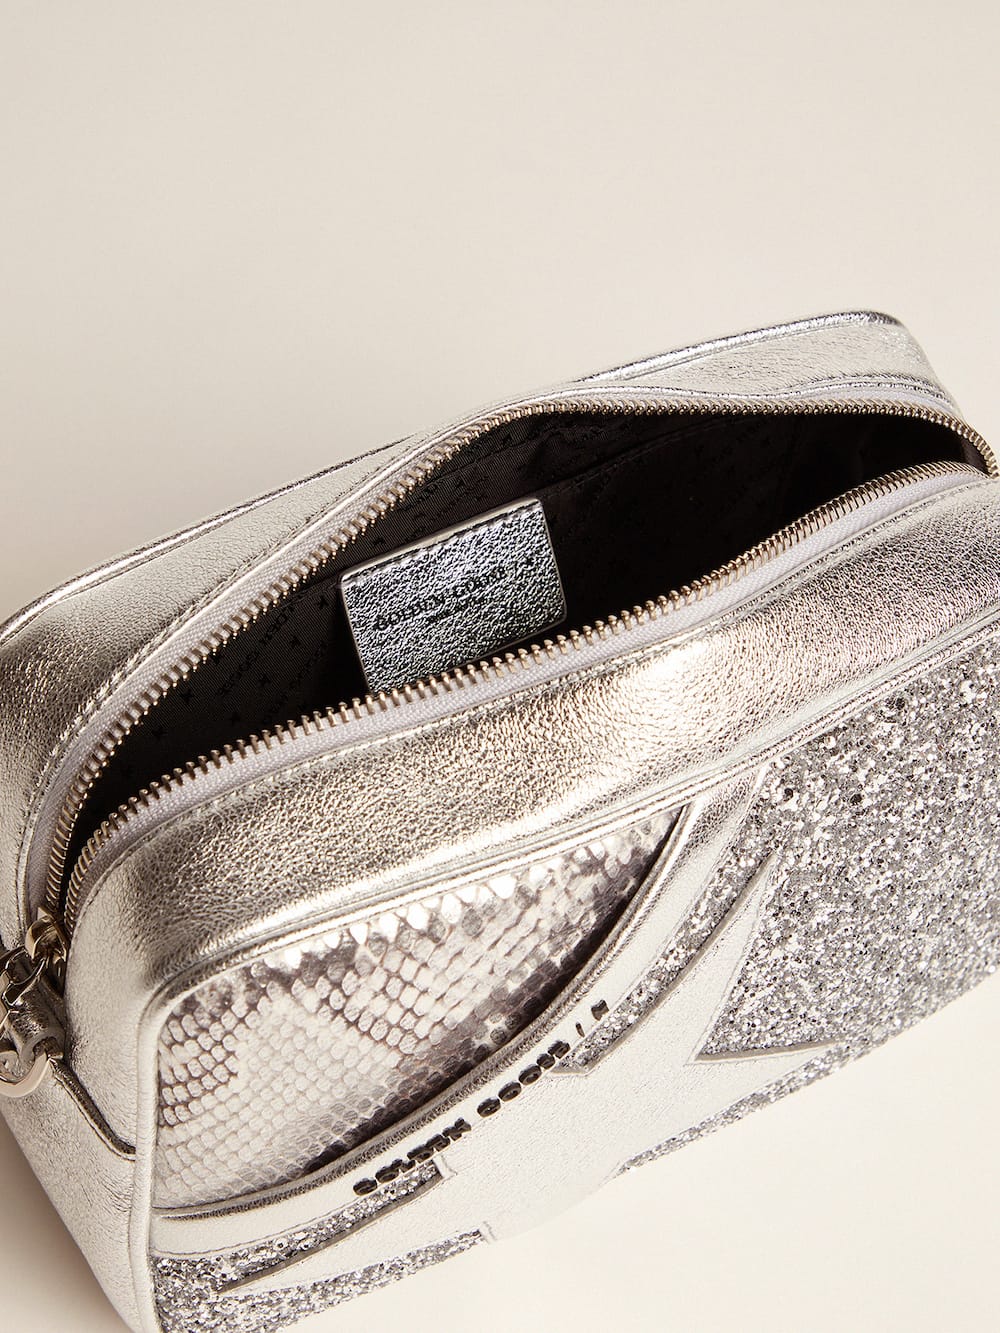 Golden Goose - Tasche Star Bag aus silberfarbenem Leder mit Pythonprägung und Glitzer in 